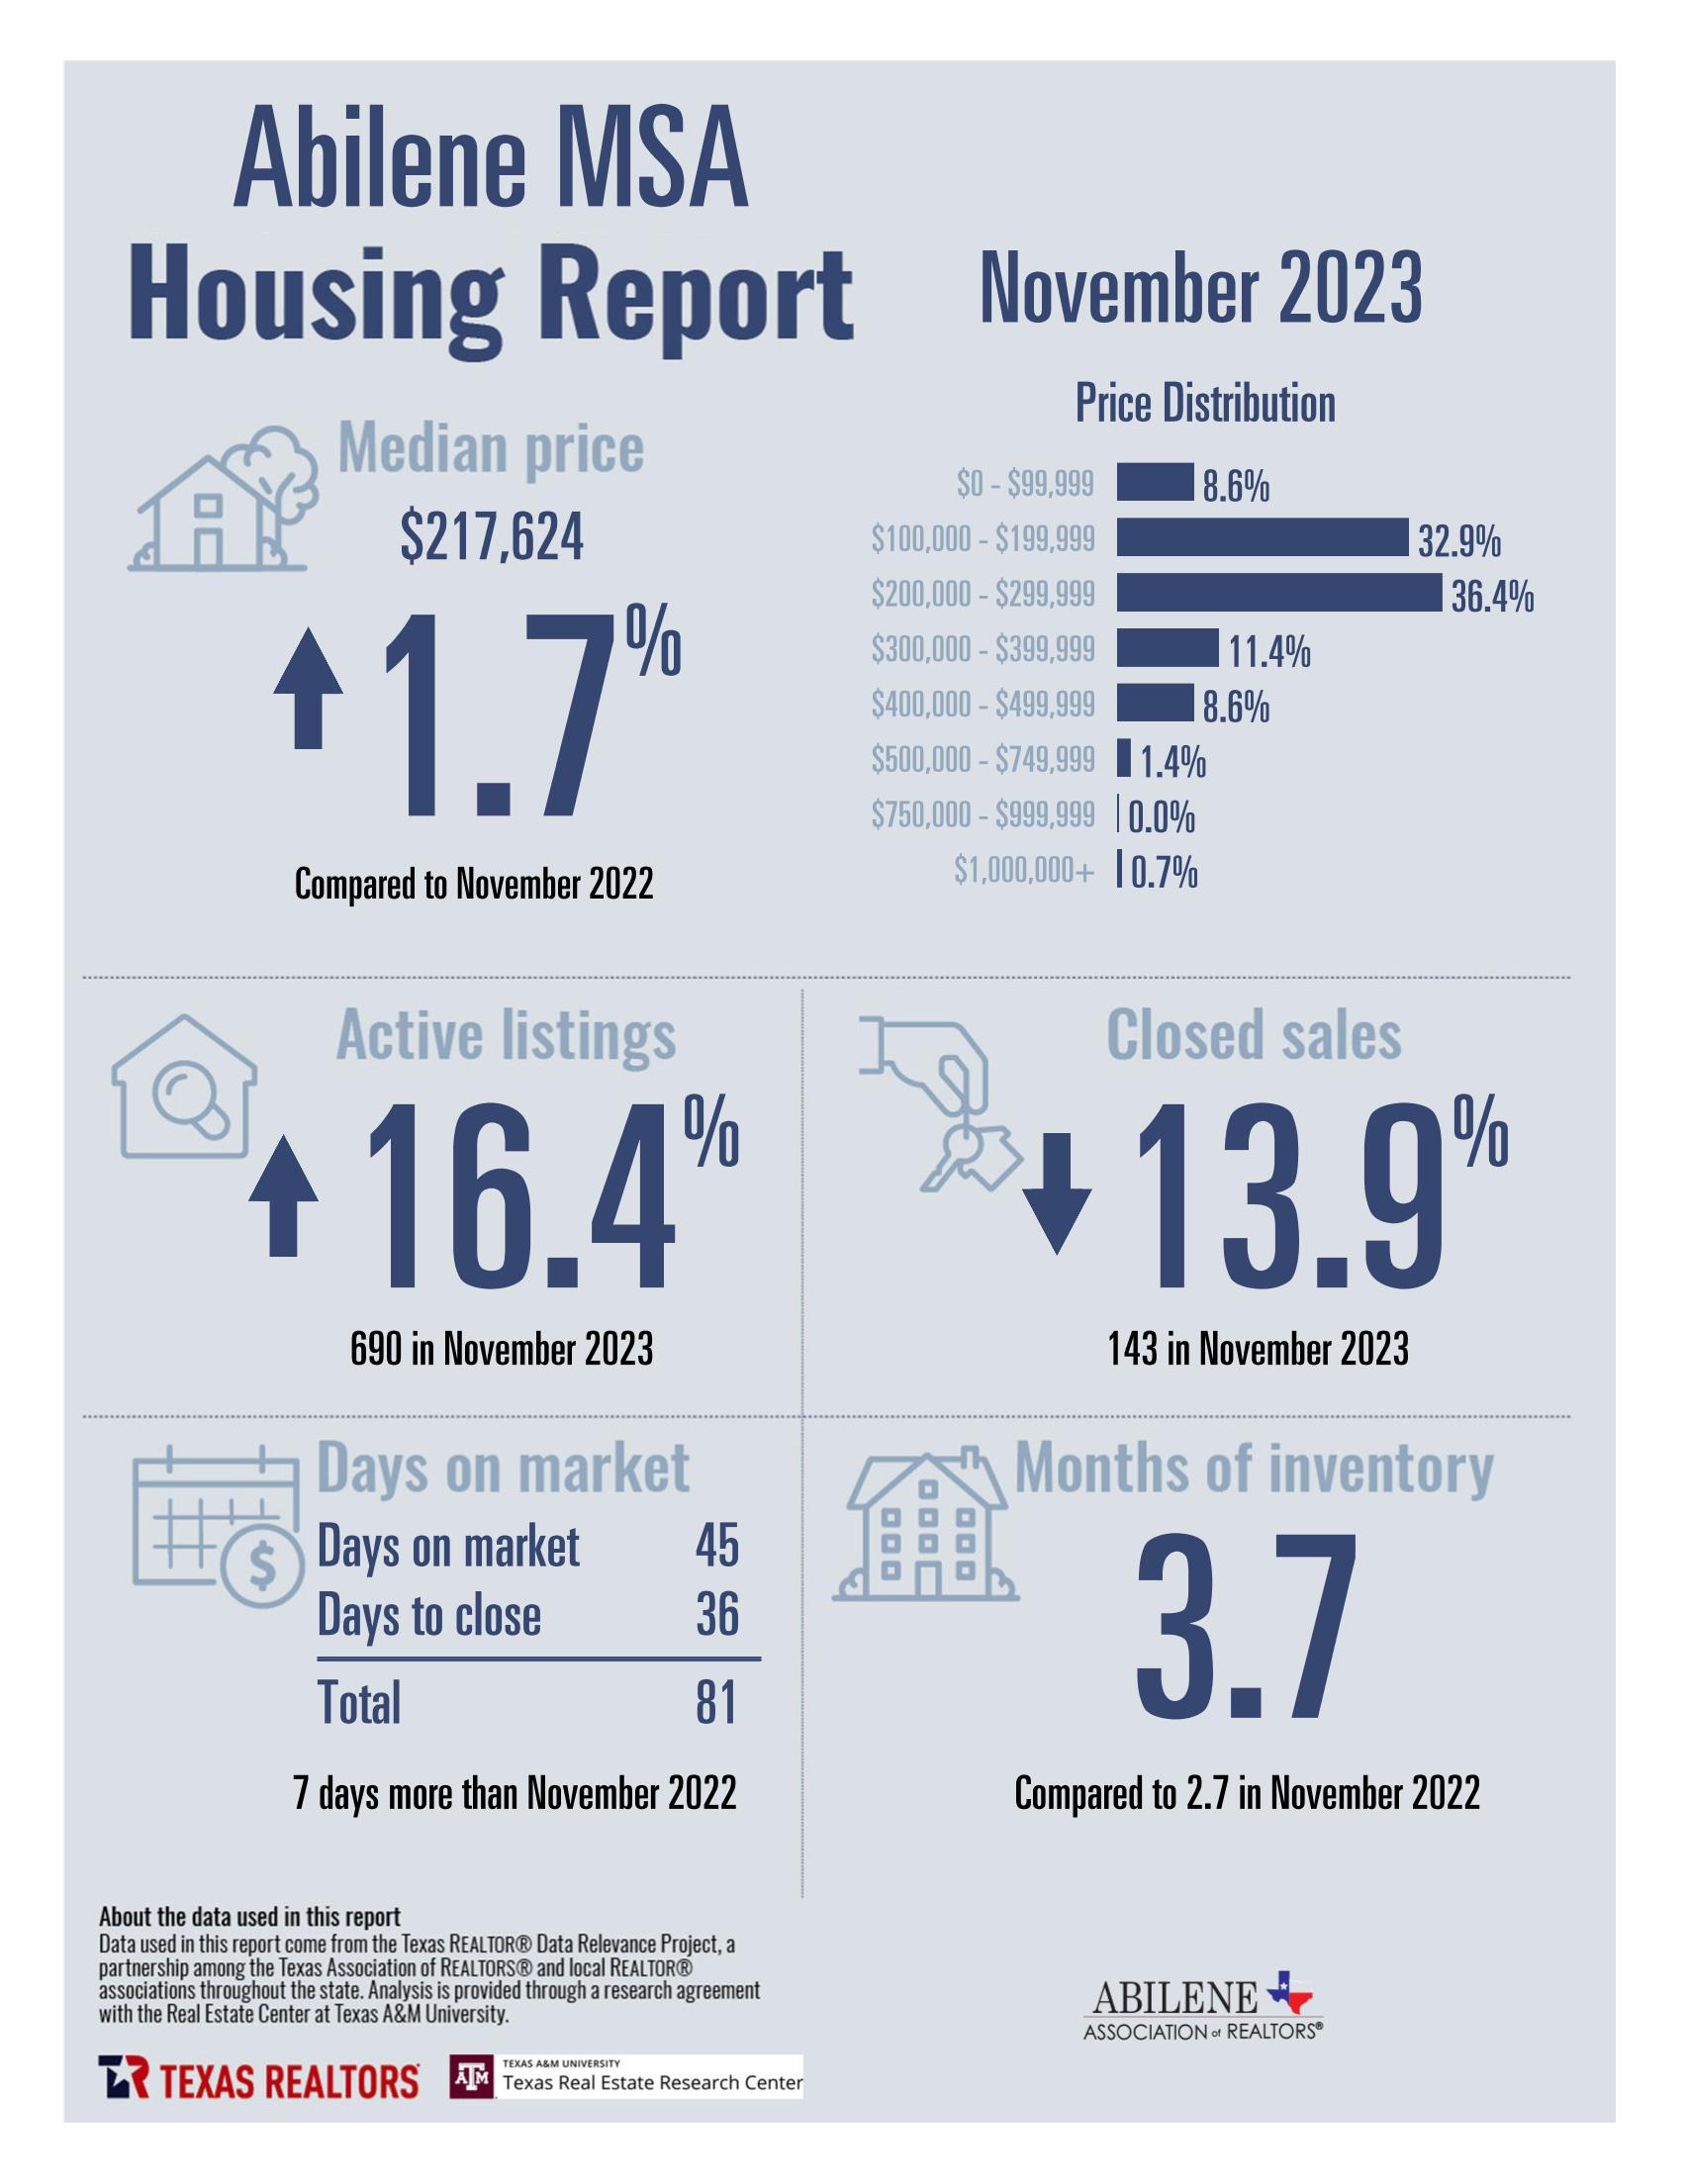 November 2023 Housing Statistics for Abilene, TX